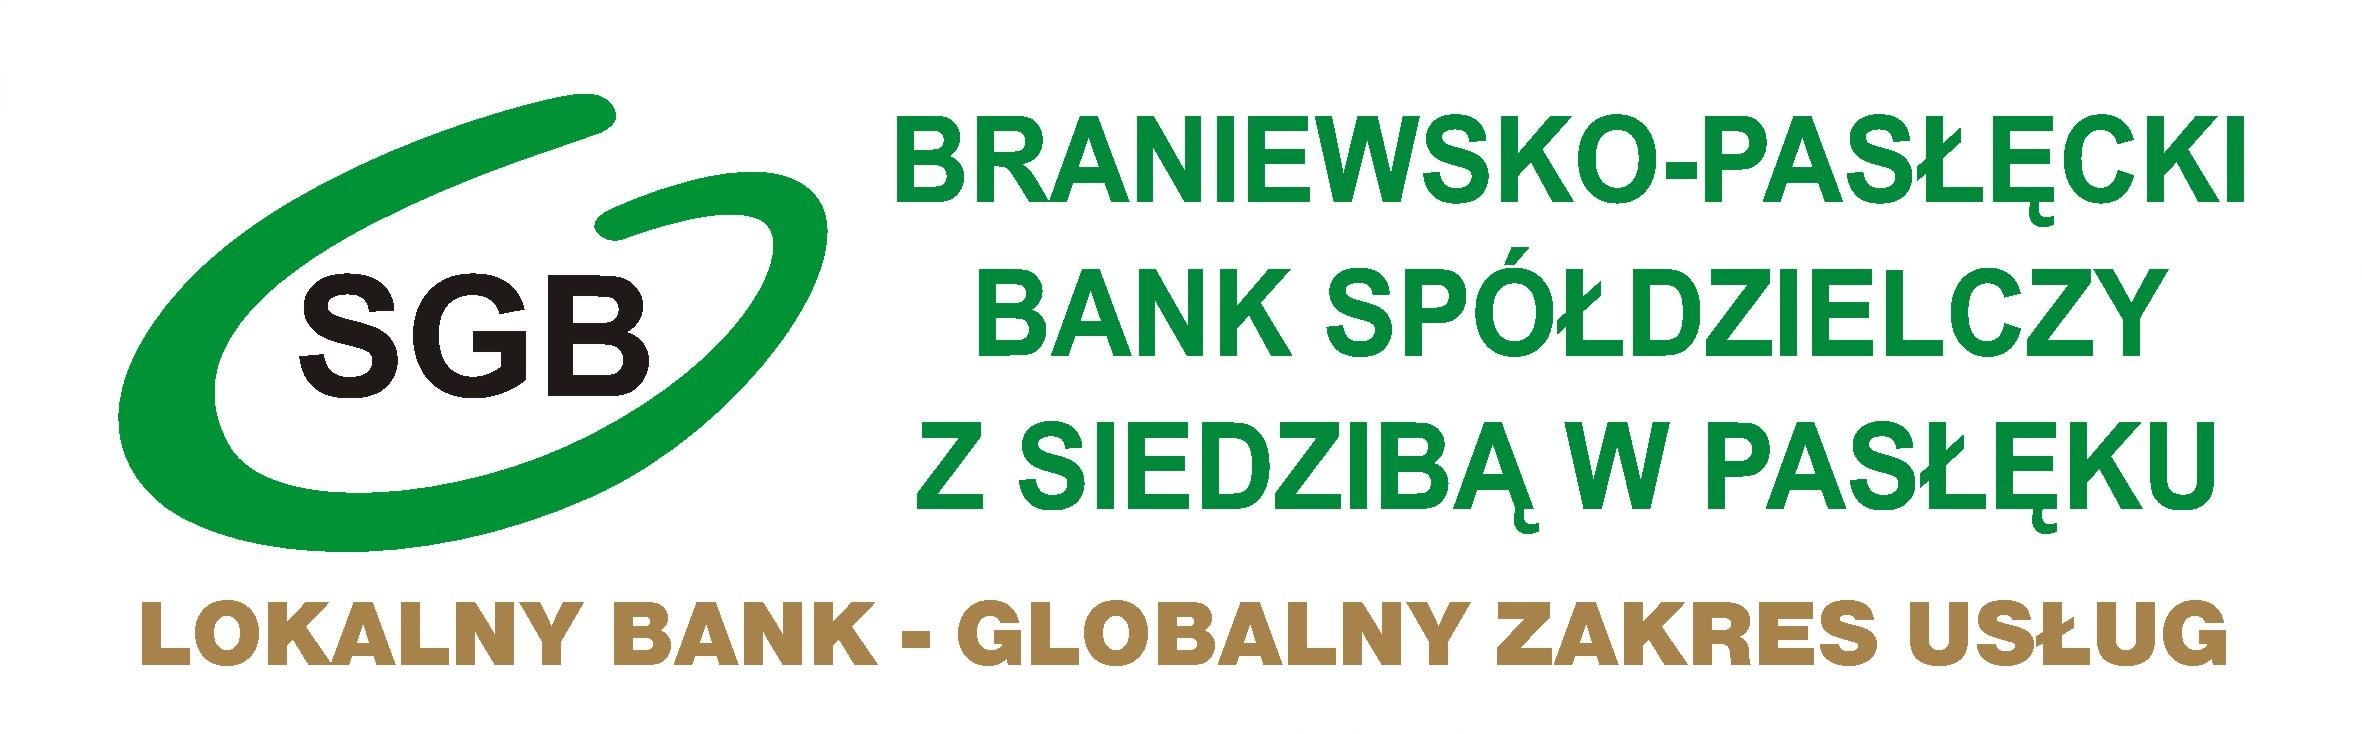 Kontakt - Braniewsko-Pasłęcki Bank Spółdzielczy z siedzibą w Pasłęku